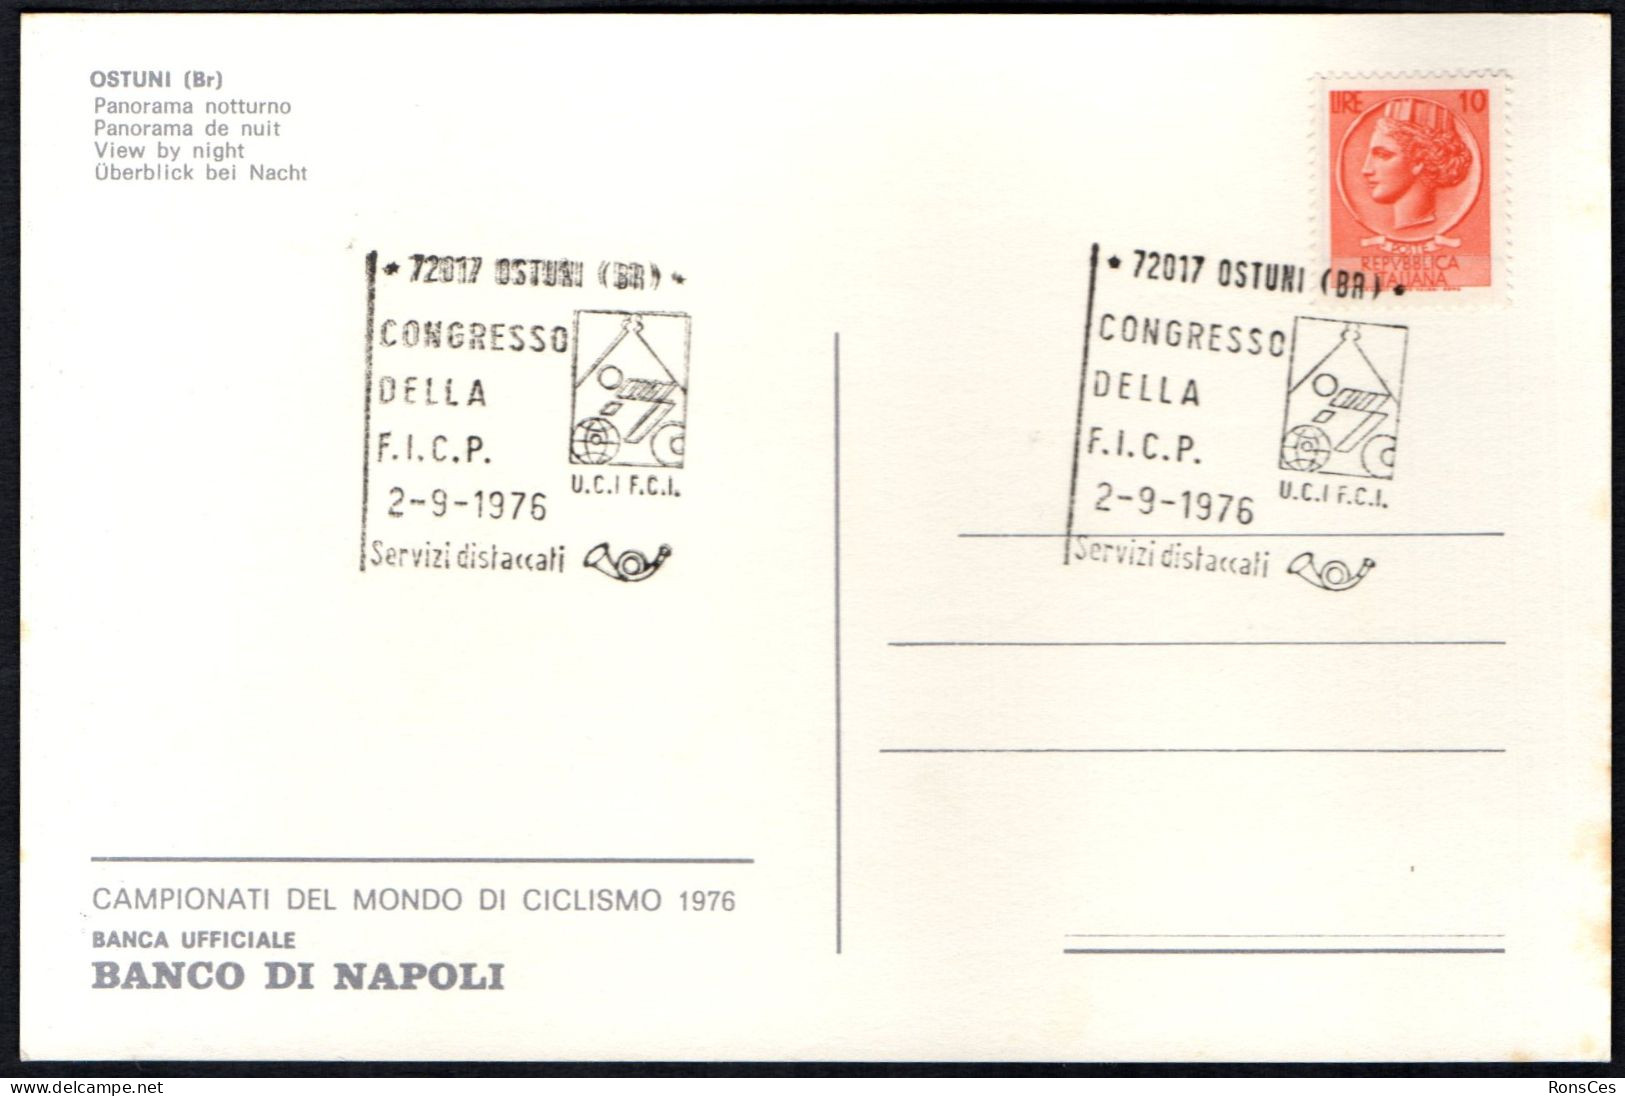 CYCLING - ITALIA OSTUNI (BR) 1976 - CONGRESSO DELLA F.I.C.P. - CARTOLINA UFFICIALE - A - Ciclismo